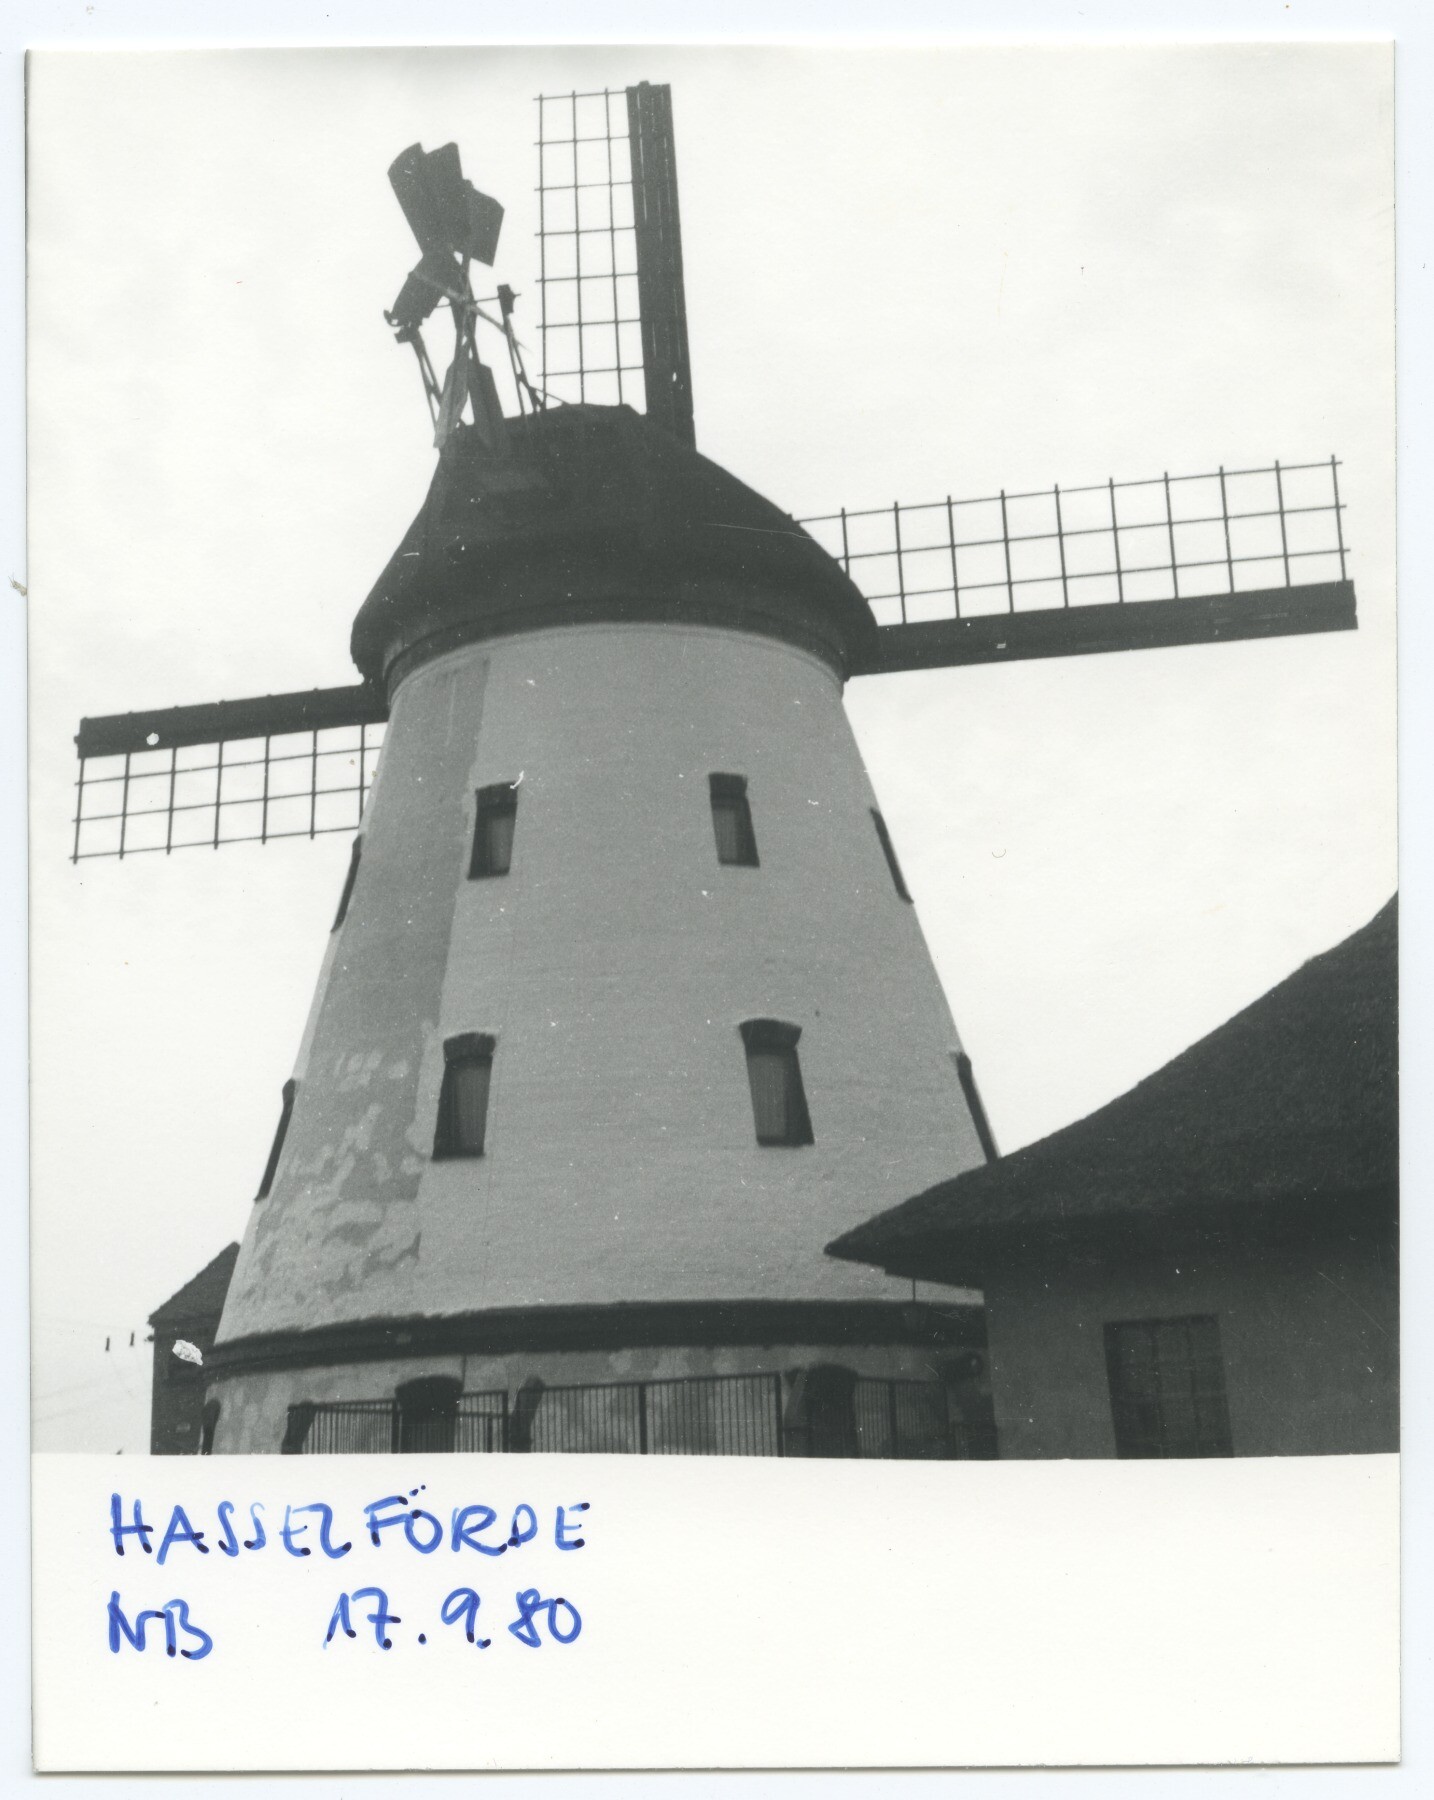 Turmholländerwindmühle Hasselförde (Historische Mühle von Sanssouci CC BY-NC-ND)